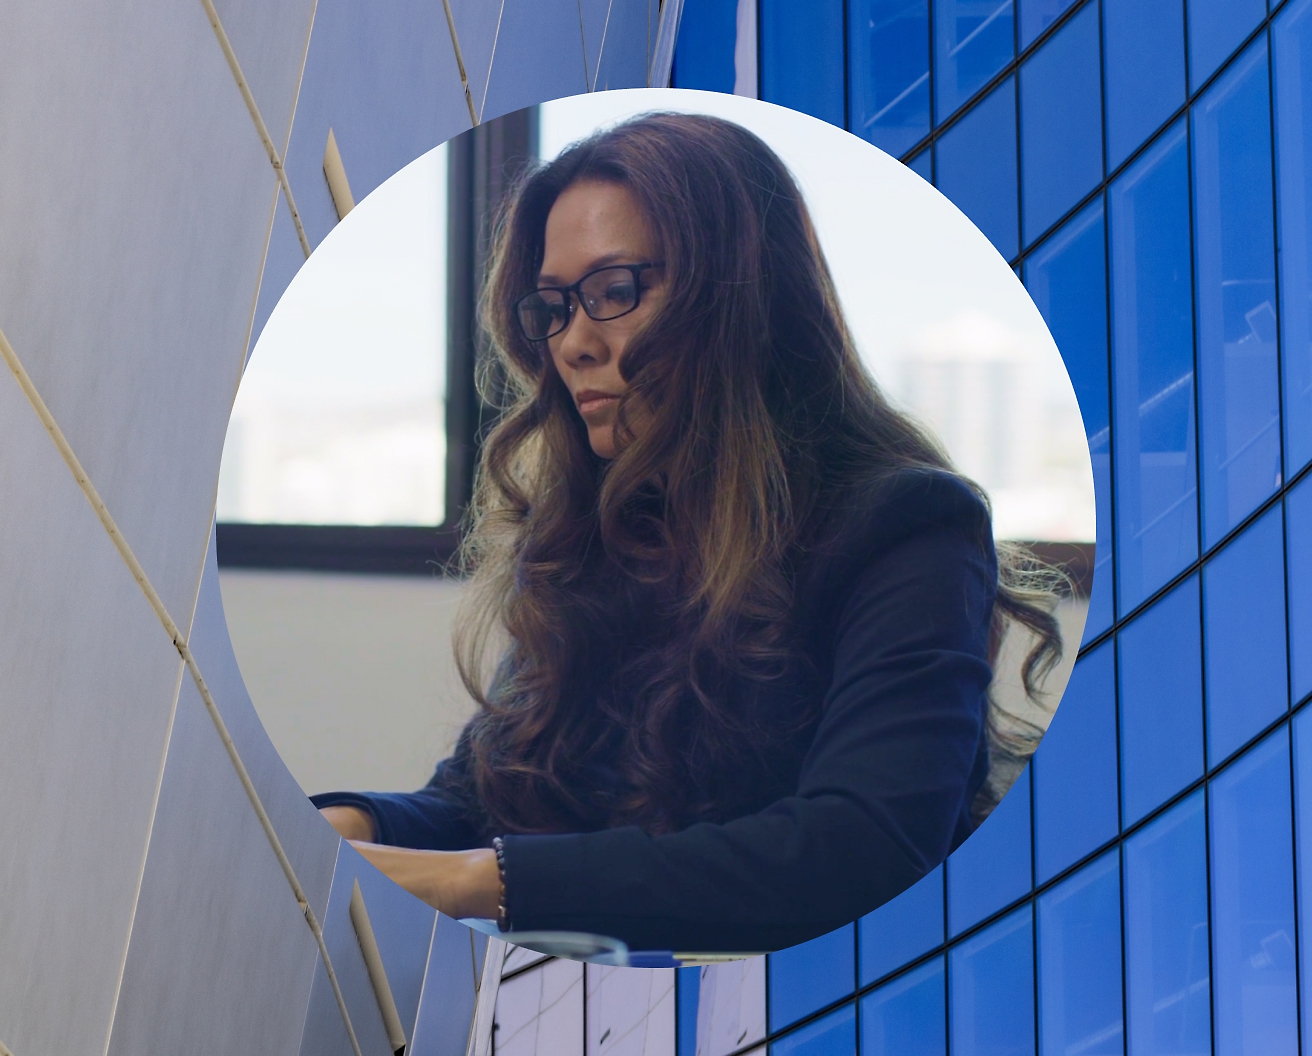 אישה עובדת על המחשב הנישא שלה מרכיבה משקפיים ותמונת רקע מוגדרת כבניין מזכוכית